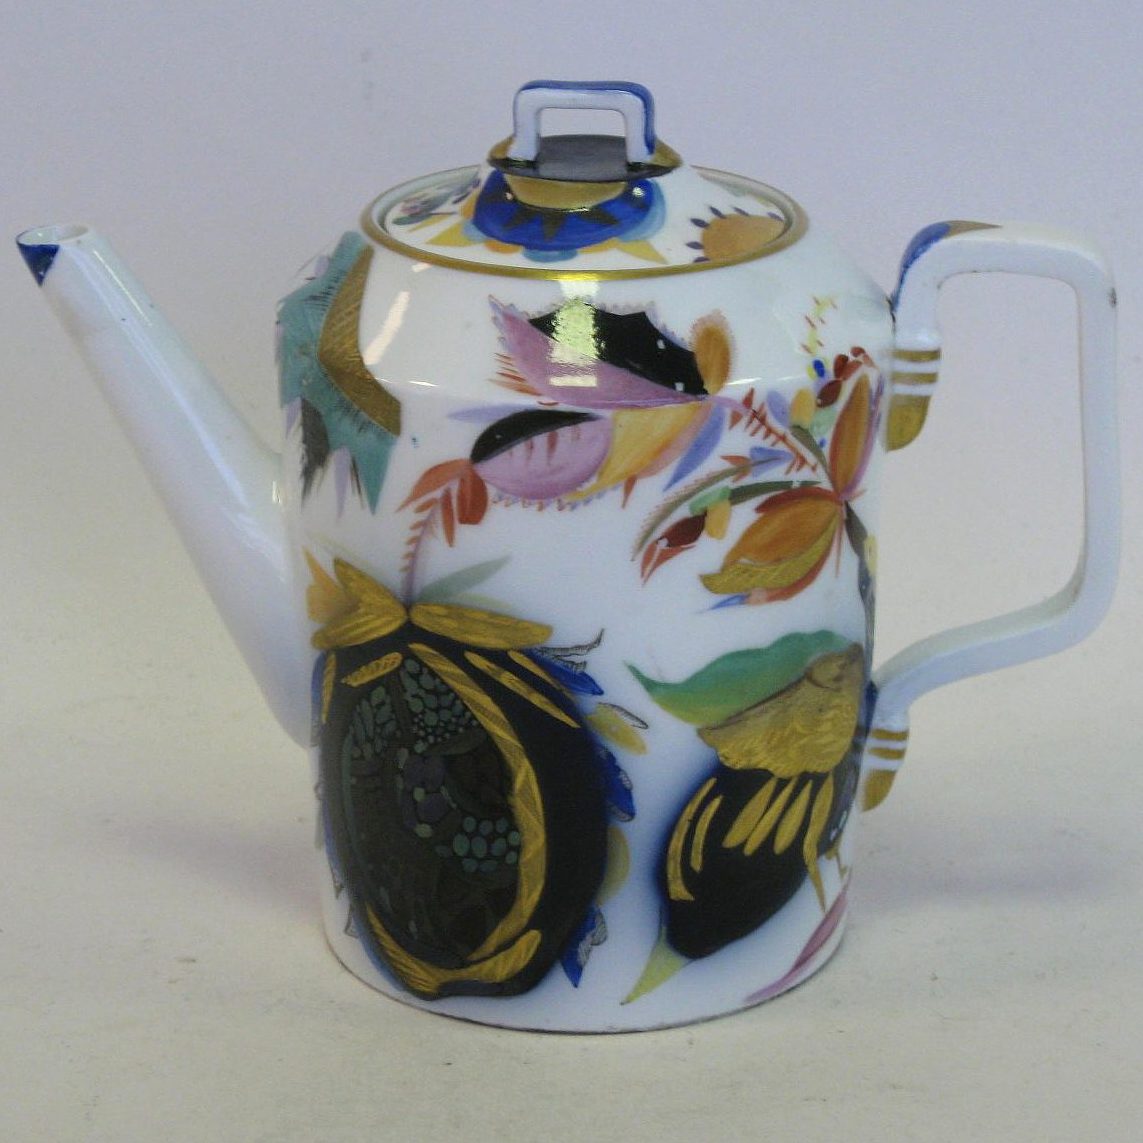 Soviet porcelain teapot "Birds of Paradise" by Kobyletskaya 1930